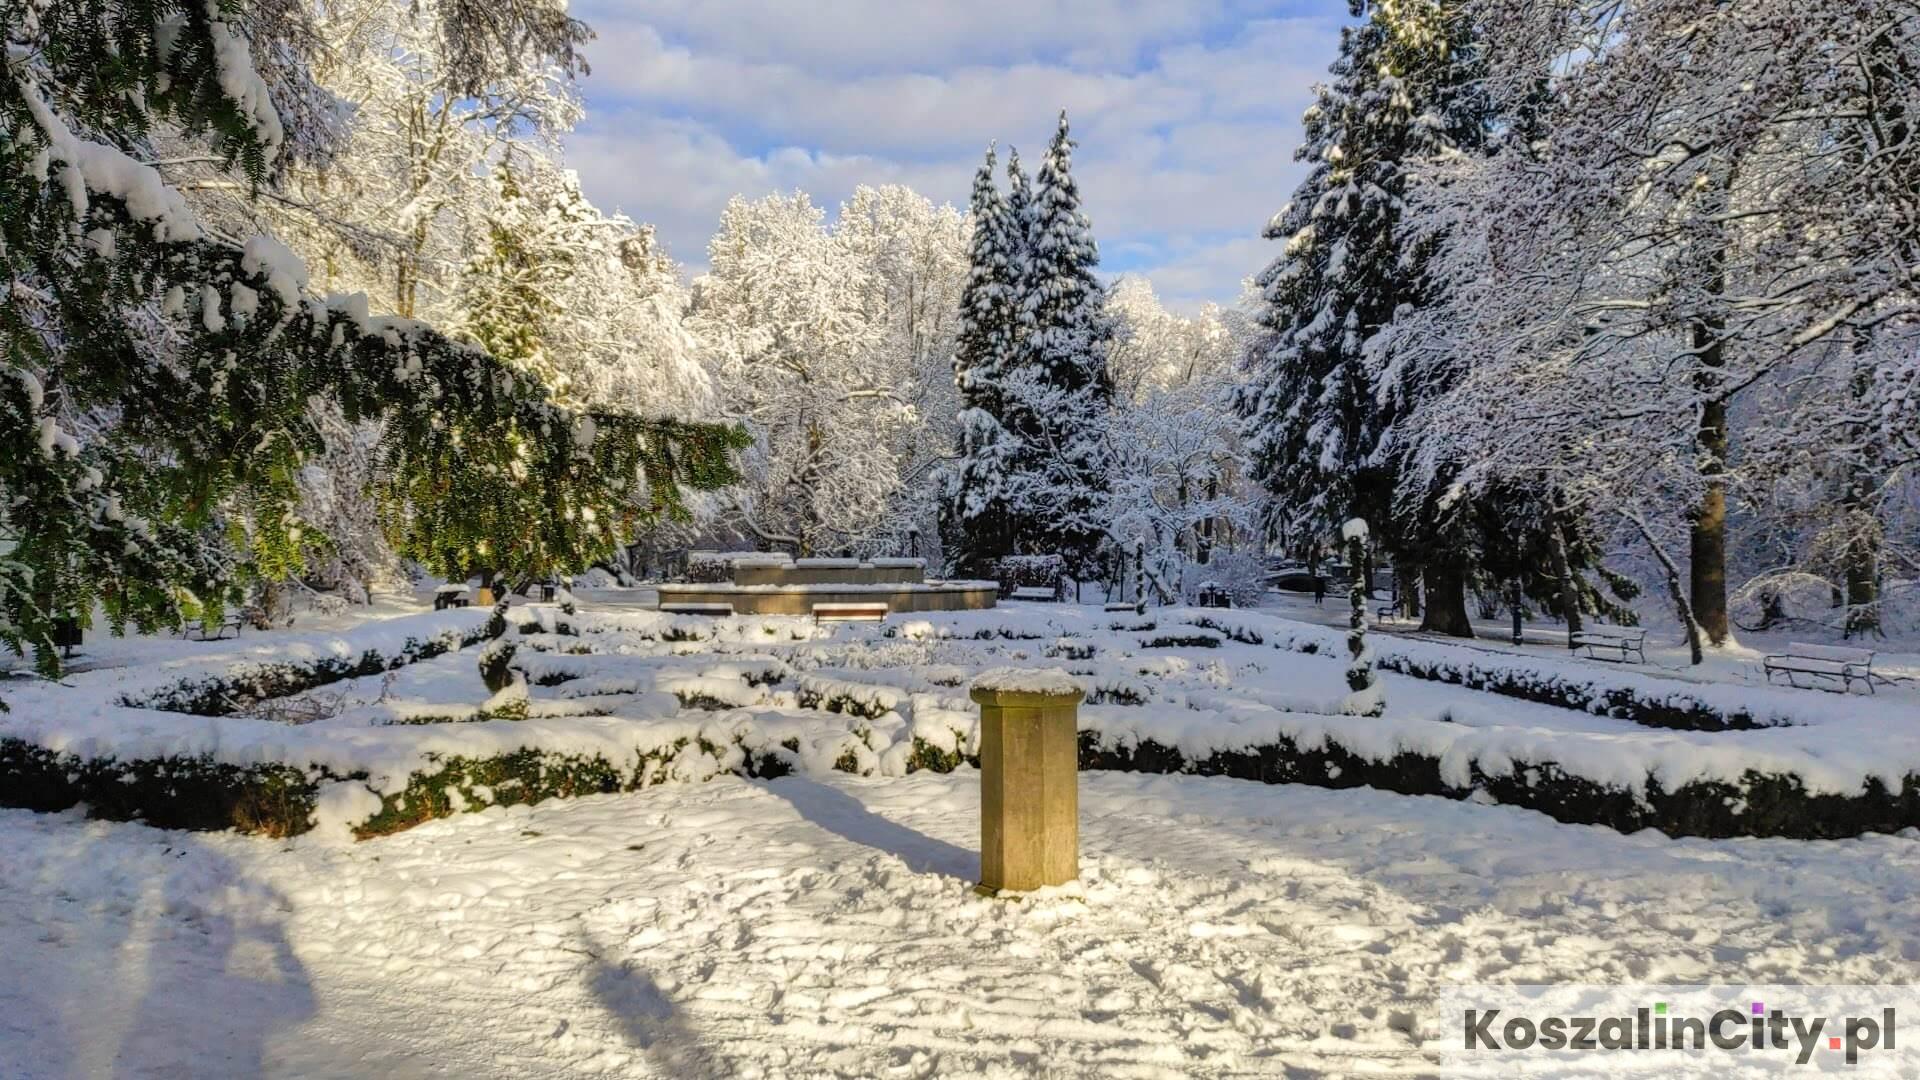 Ogród różany, zegar słoneczny i fontanna w parku w Koszalinie